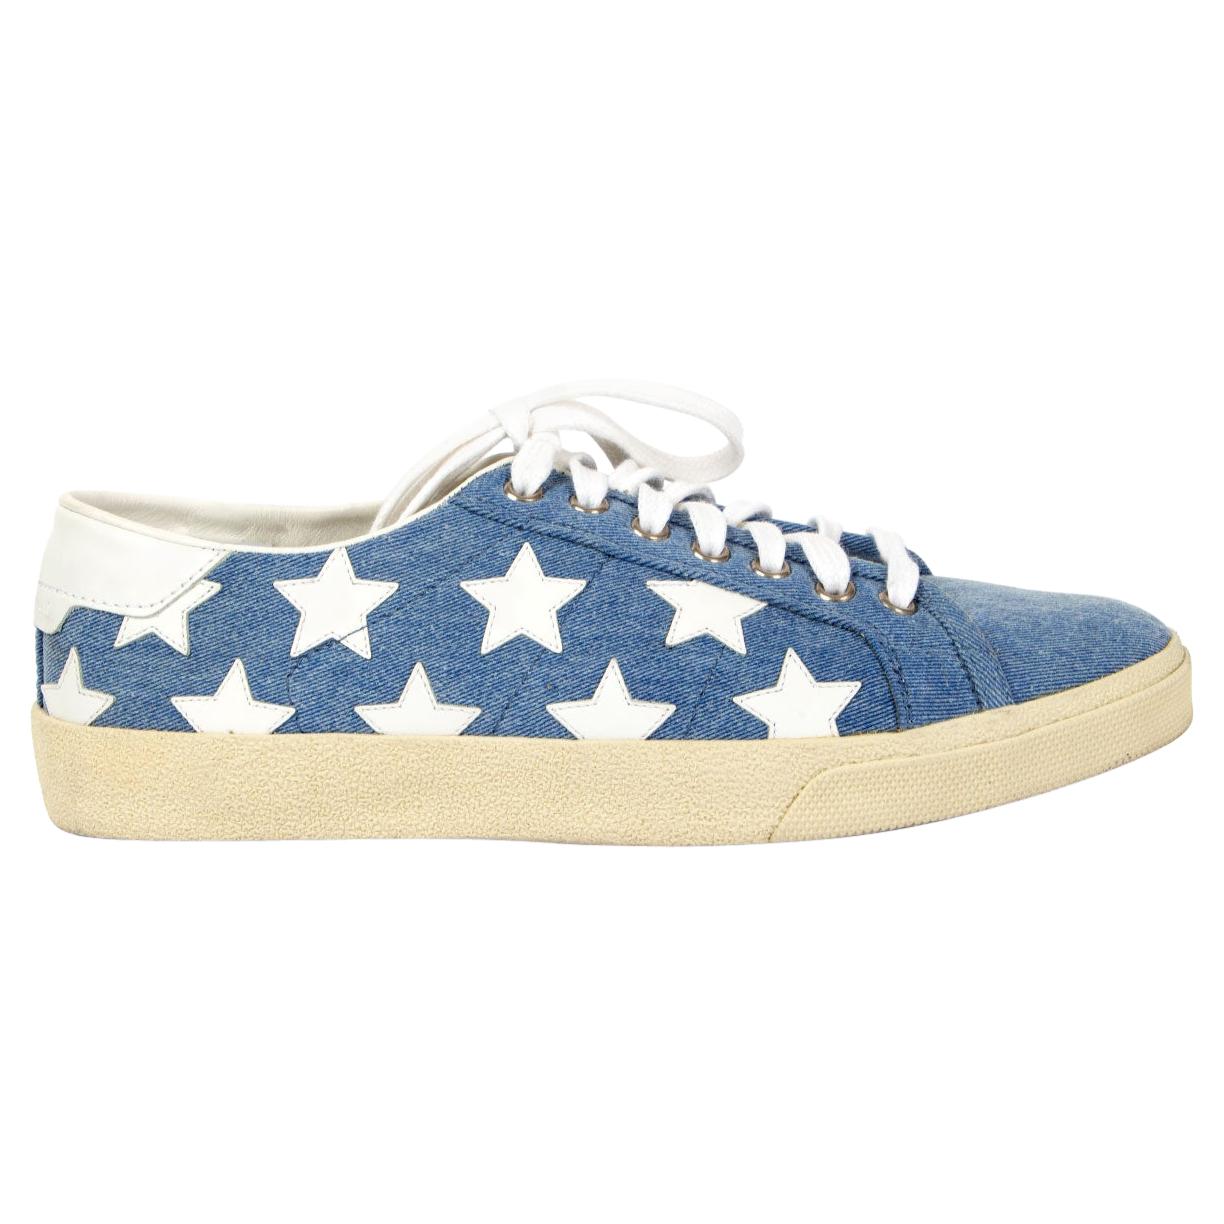 SAINT LAURENT blue Denim CLASSIC COURT STAR Sneakers Shoes 39.5